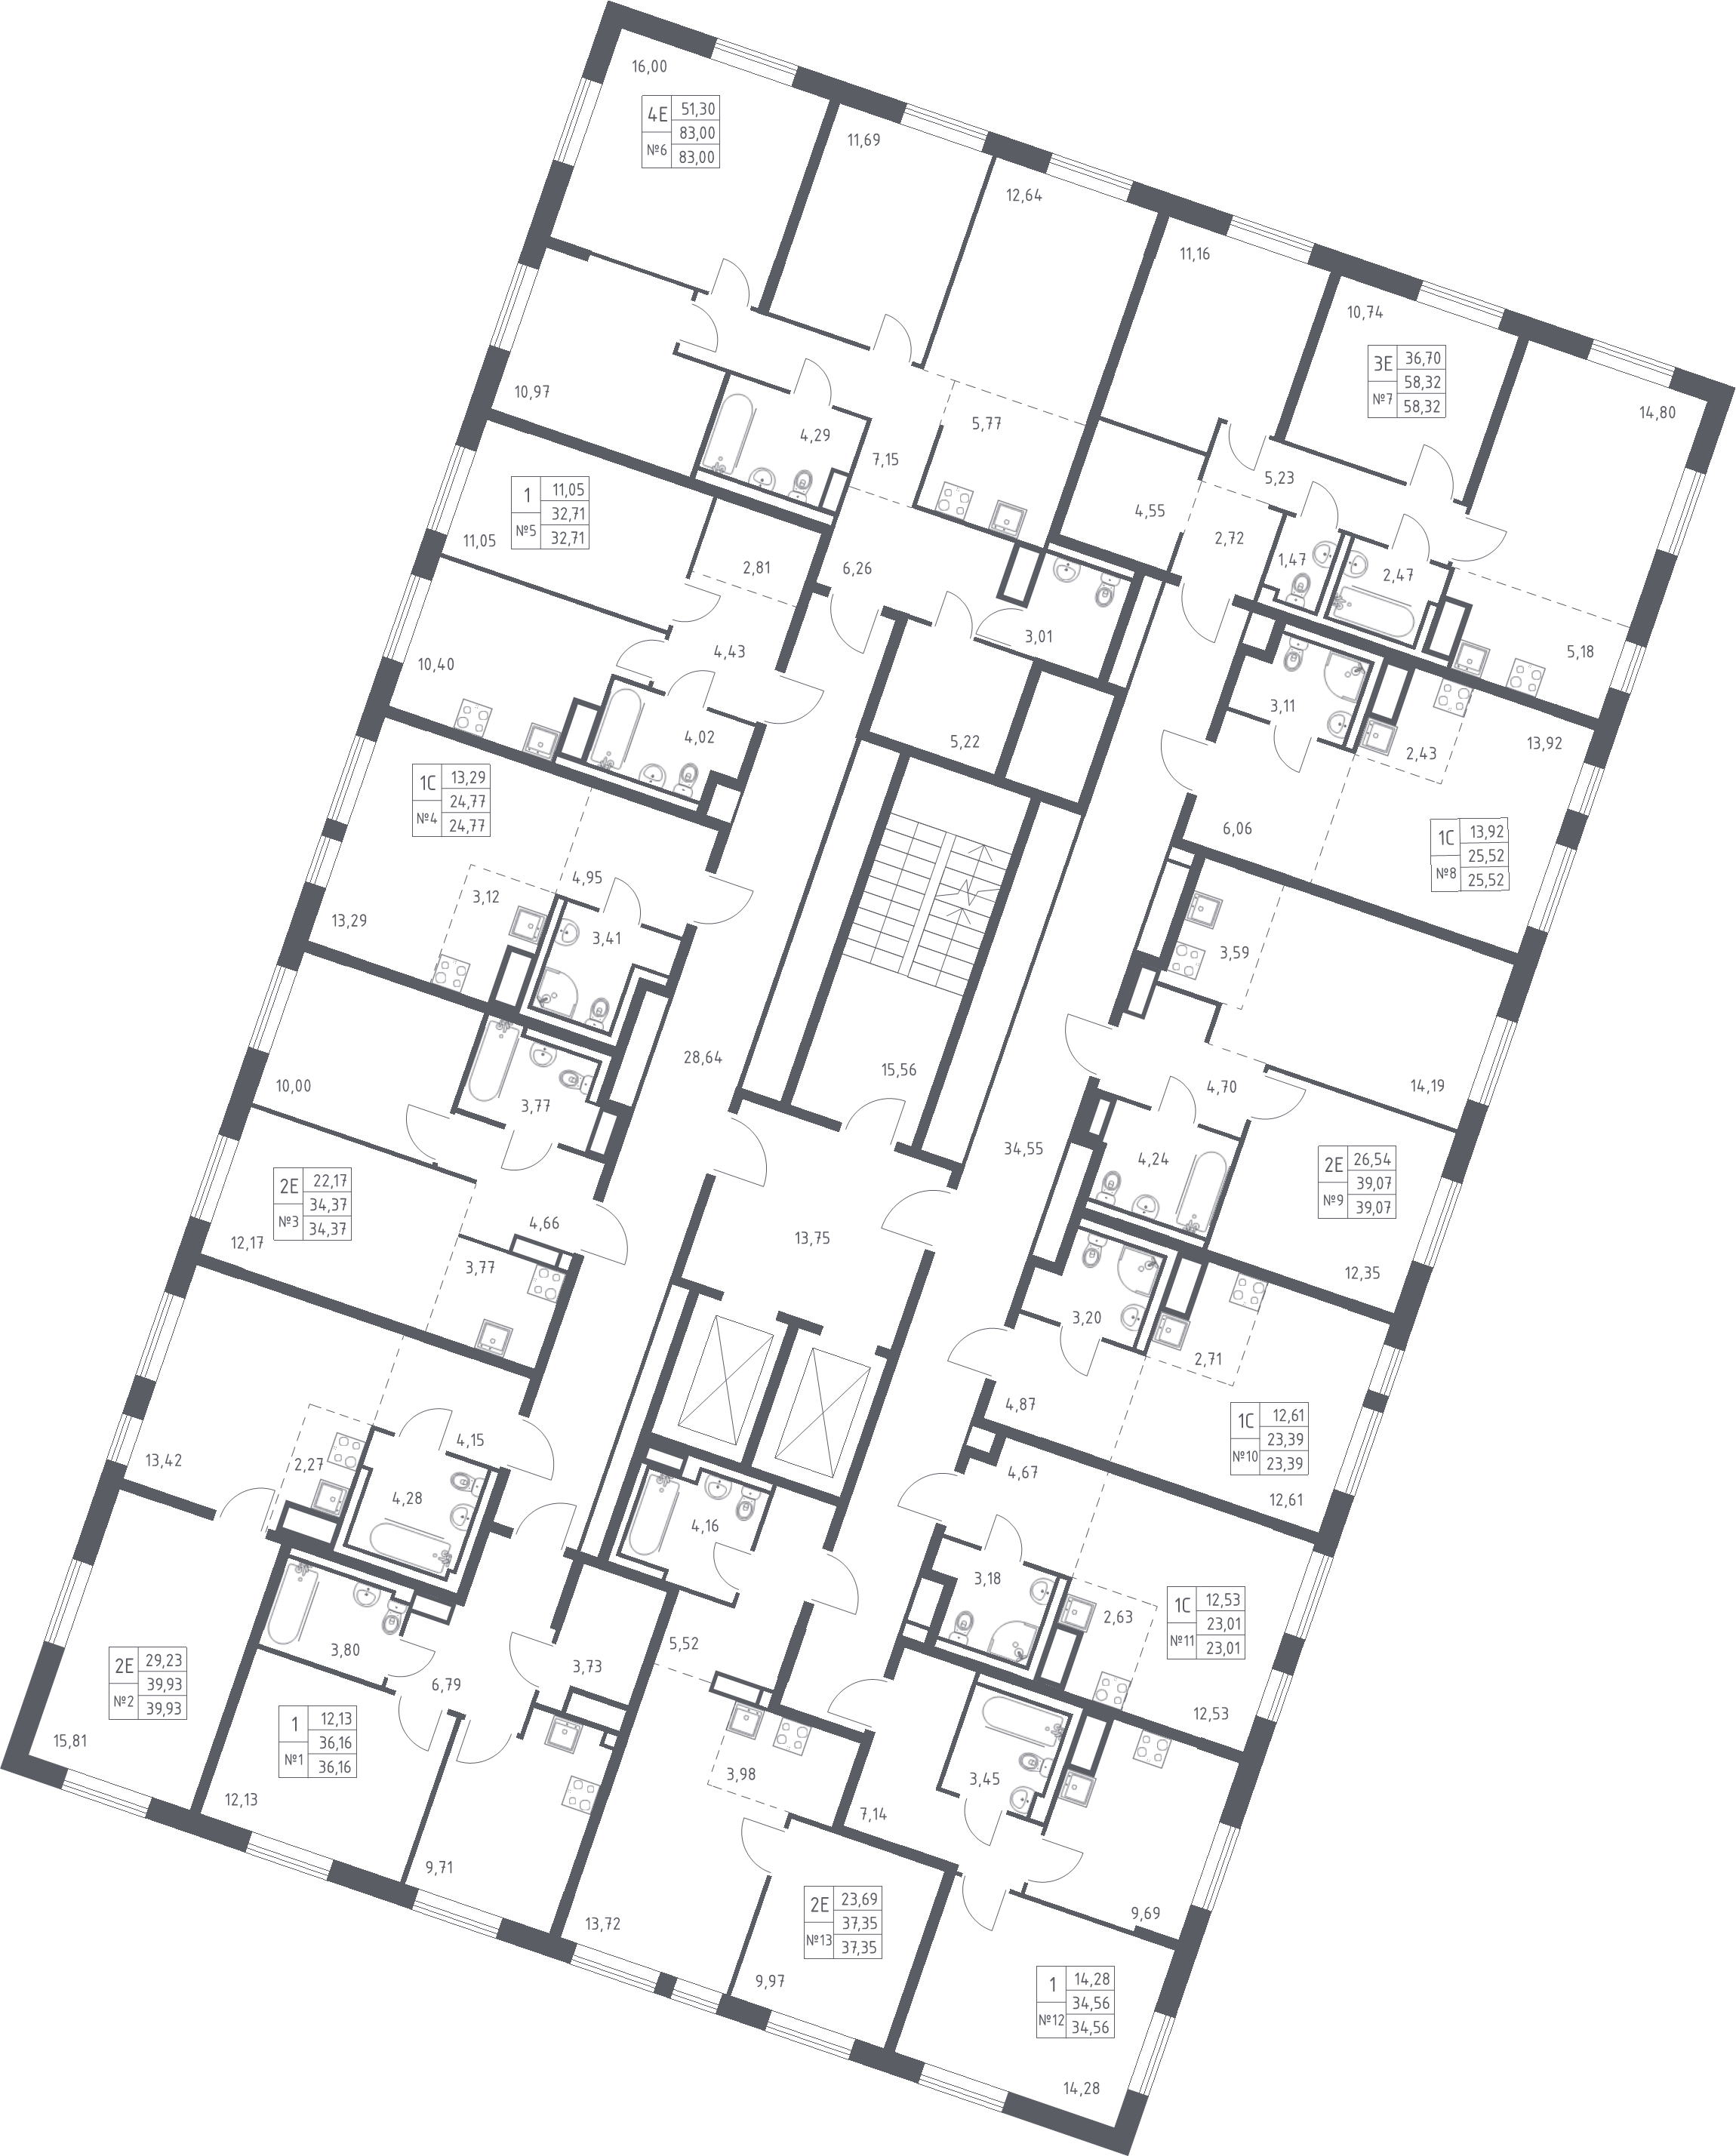 1-комнатная квартира, 32.71 м² - планировка этажа